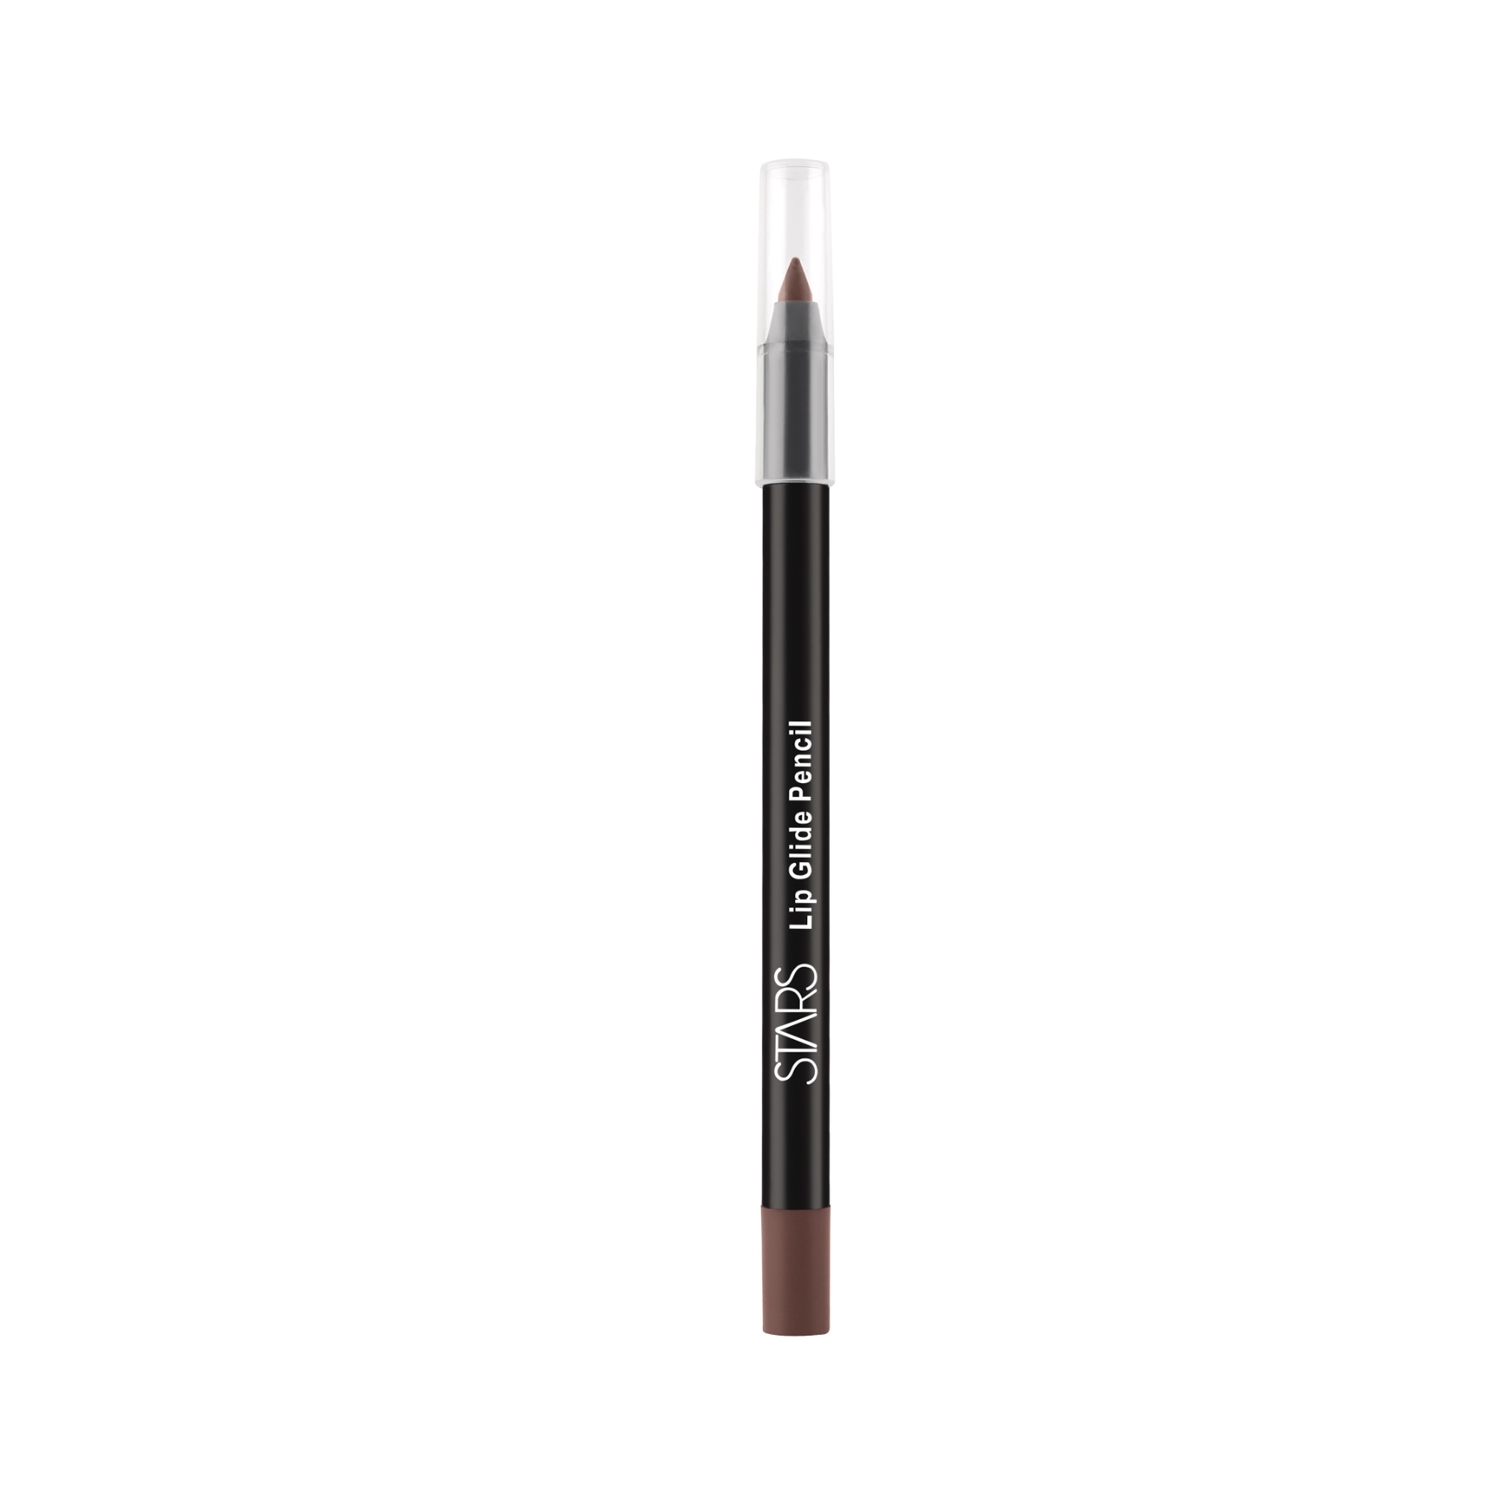 Stars Cosmetics Lip Glide Pencil - 06 Raisin (1.2g)